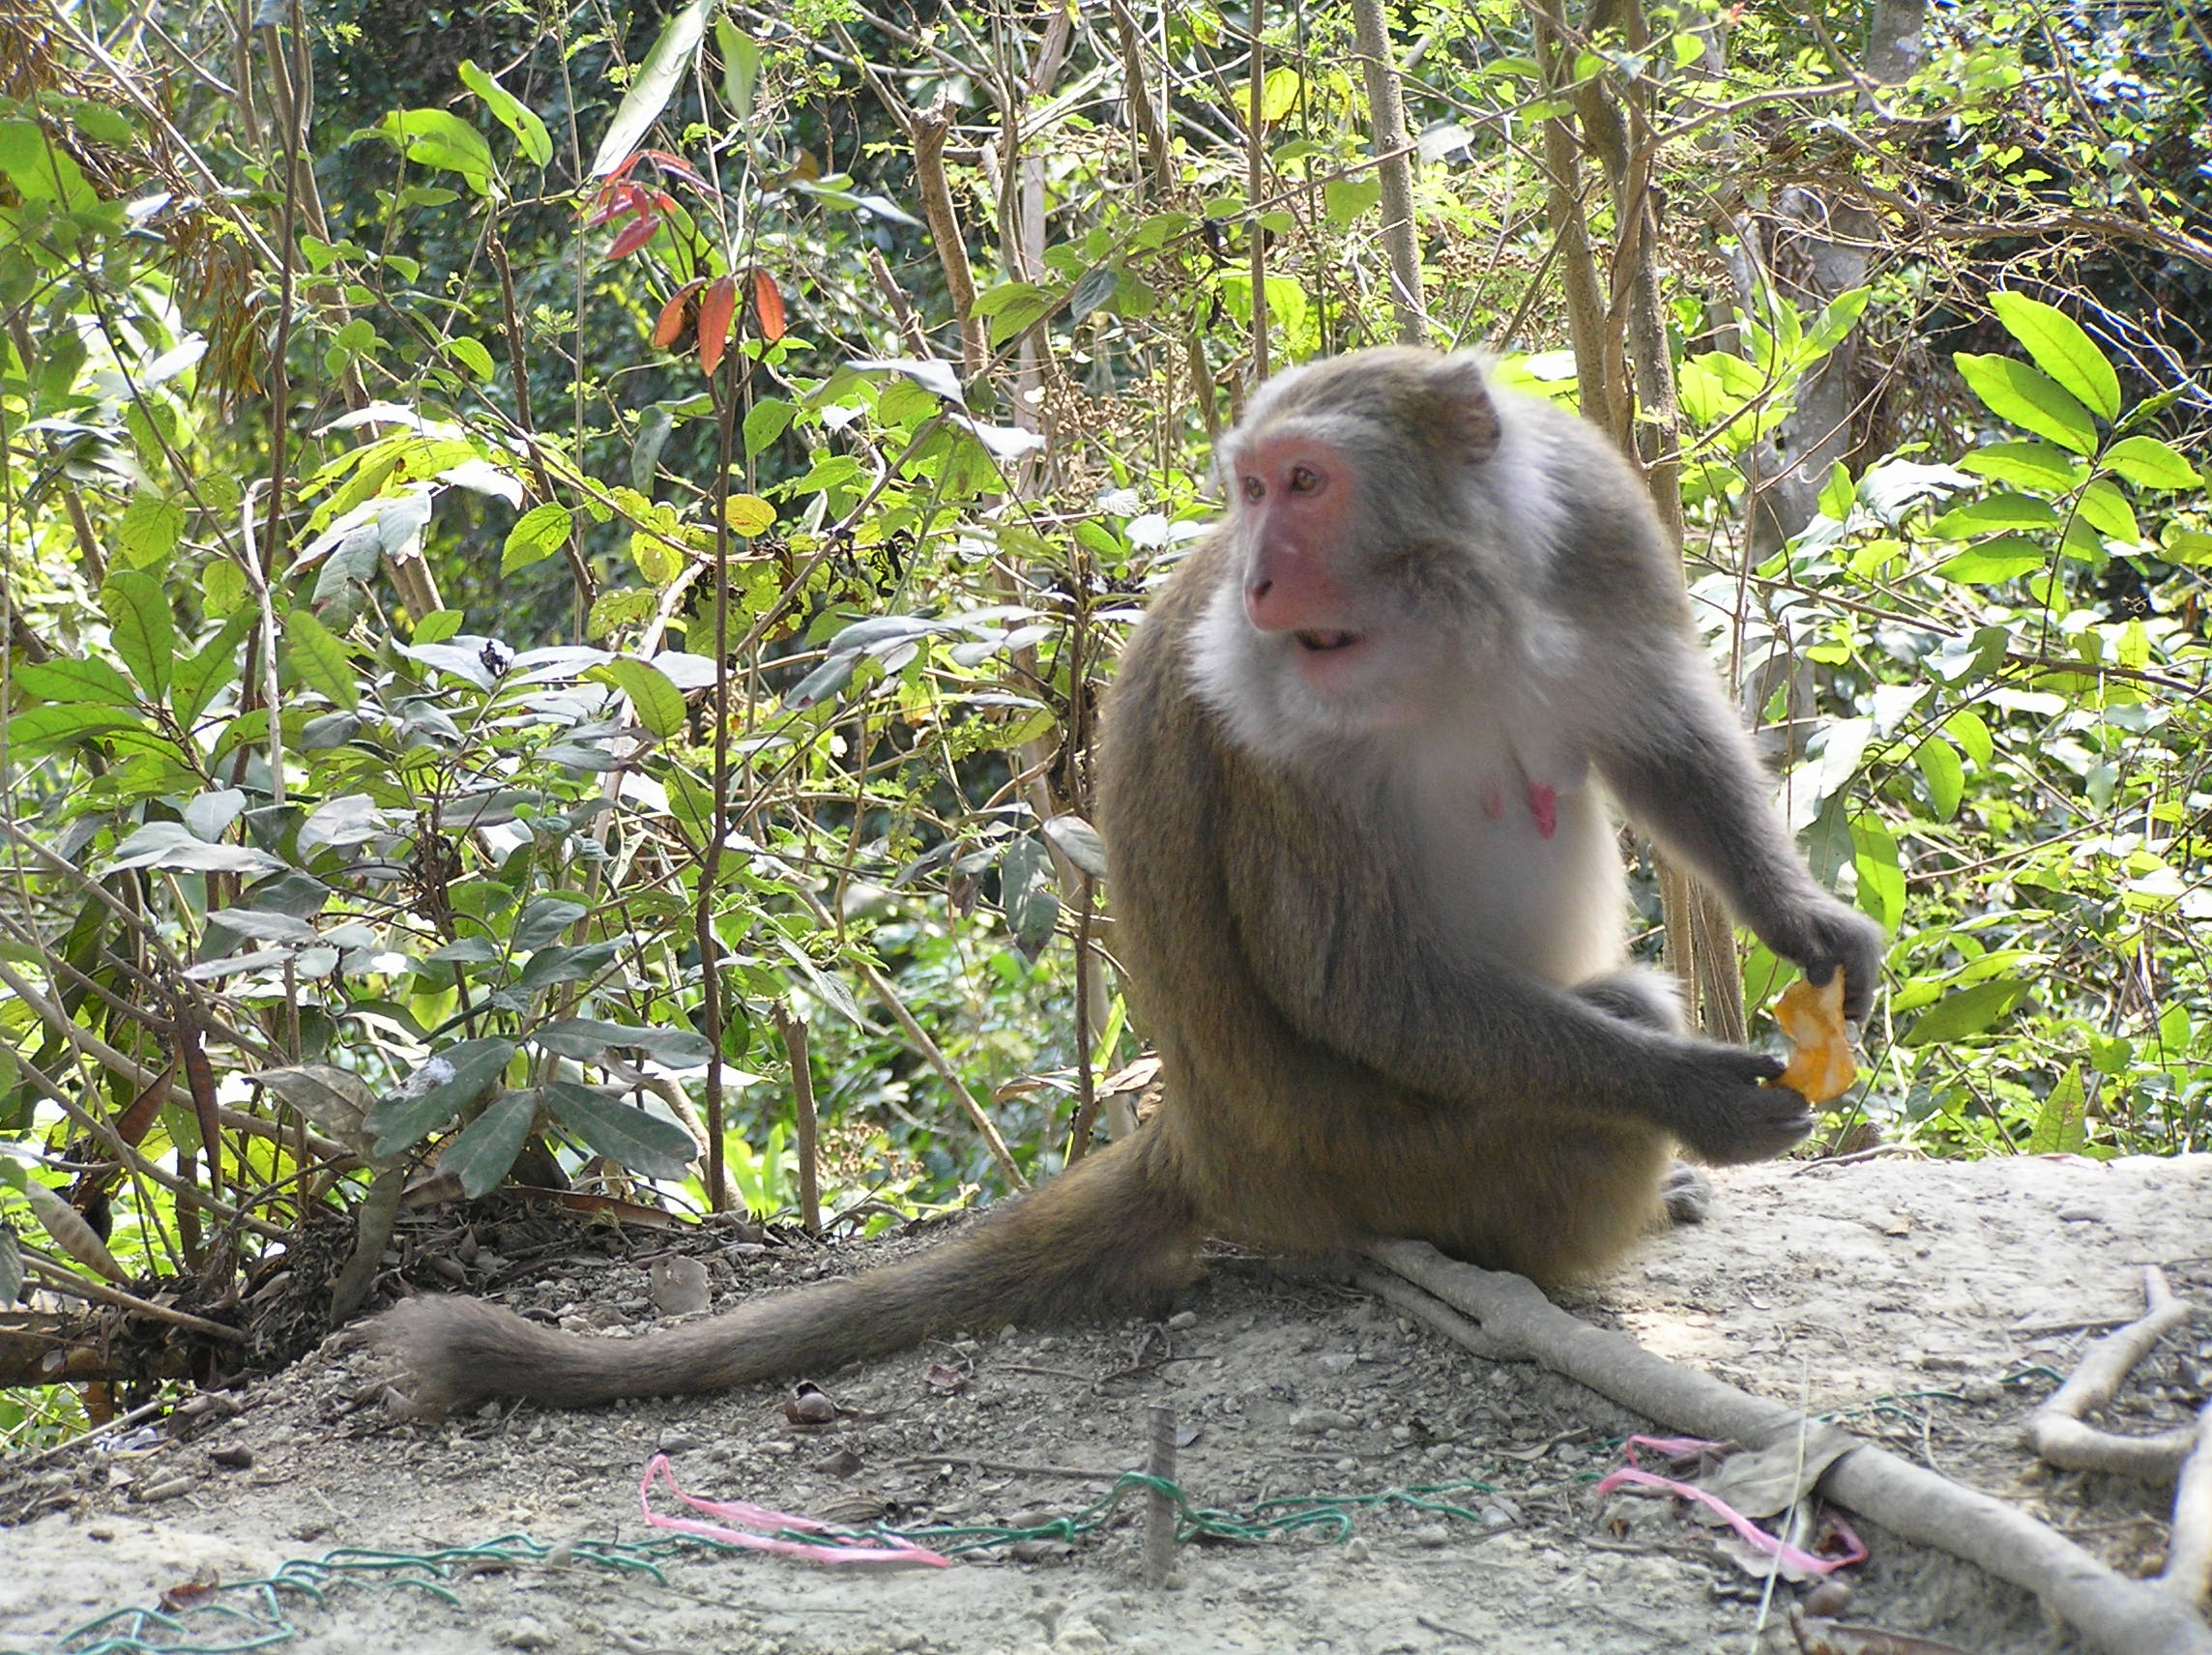 台湾猴图片图片